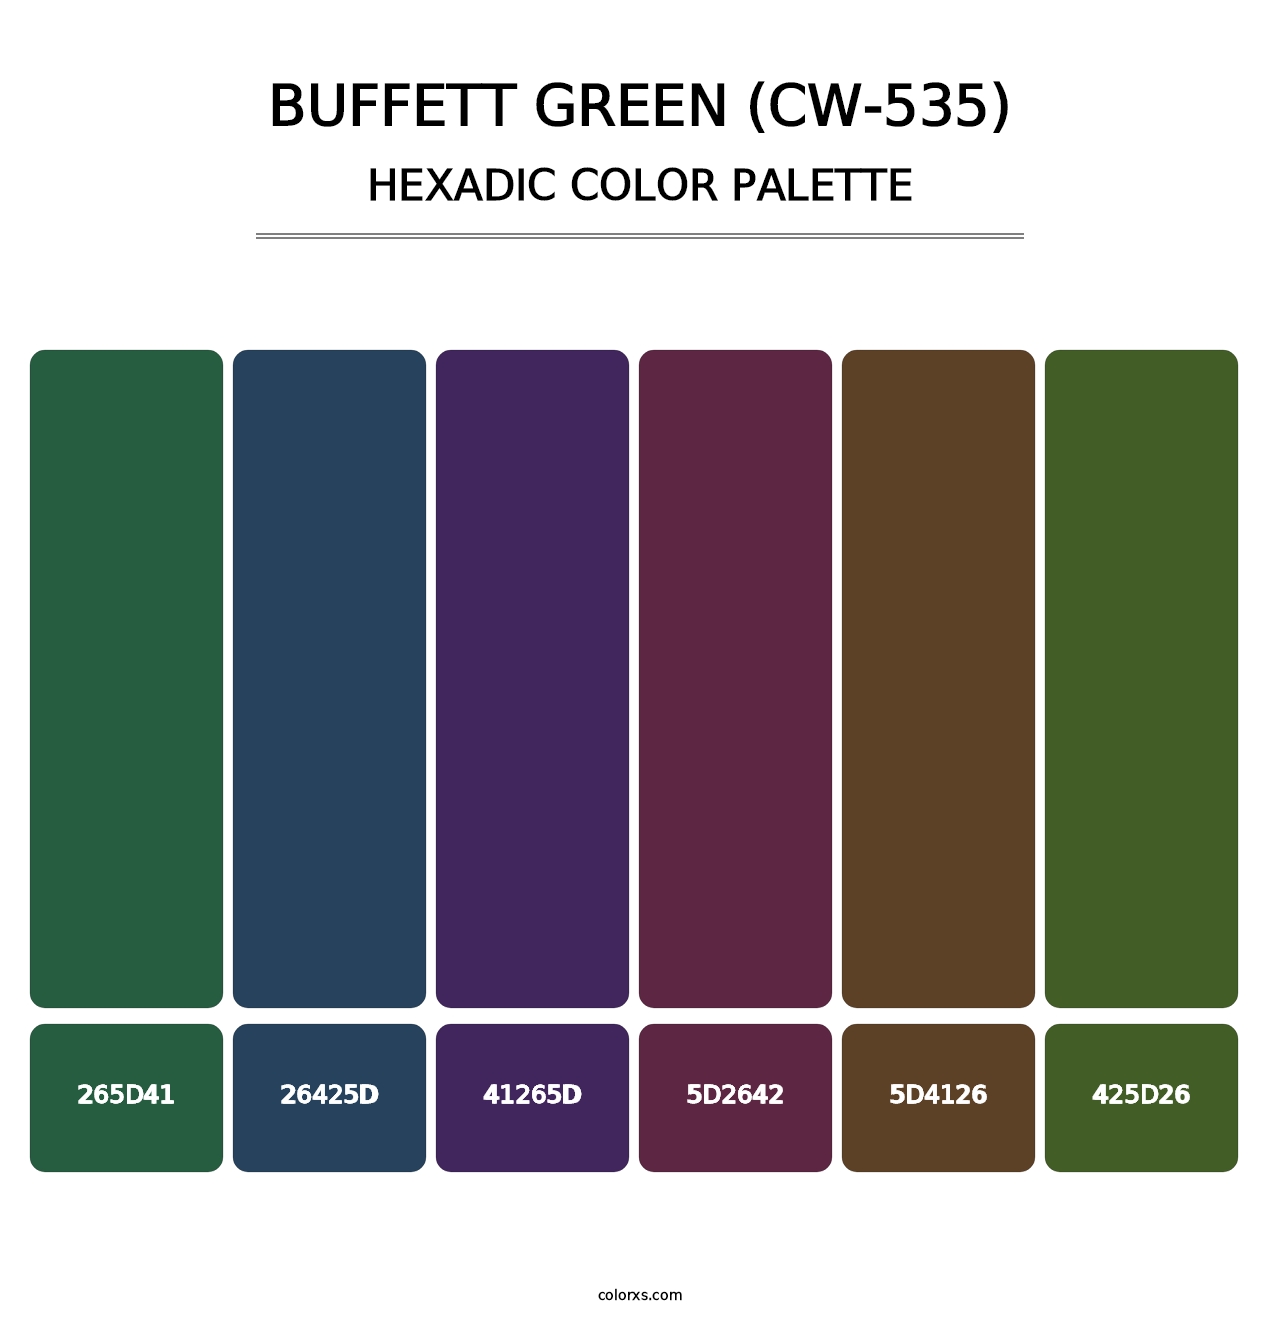 Buffett Green (CW-535) - Hexadic Color Palette